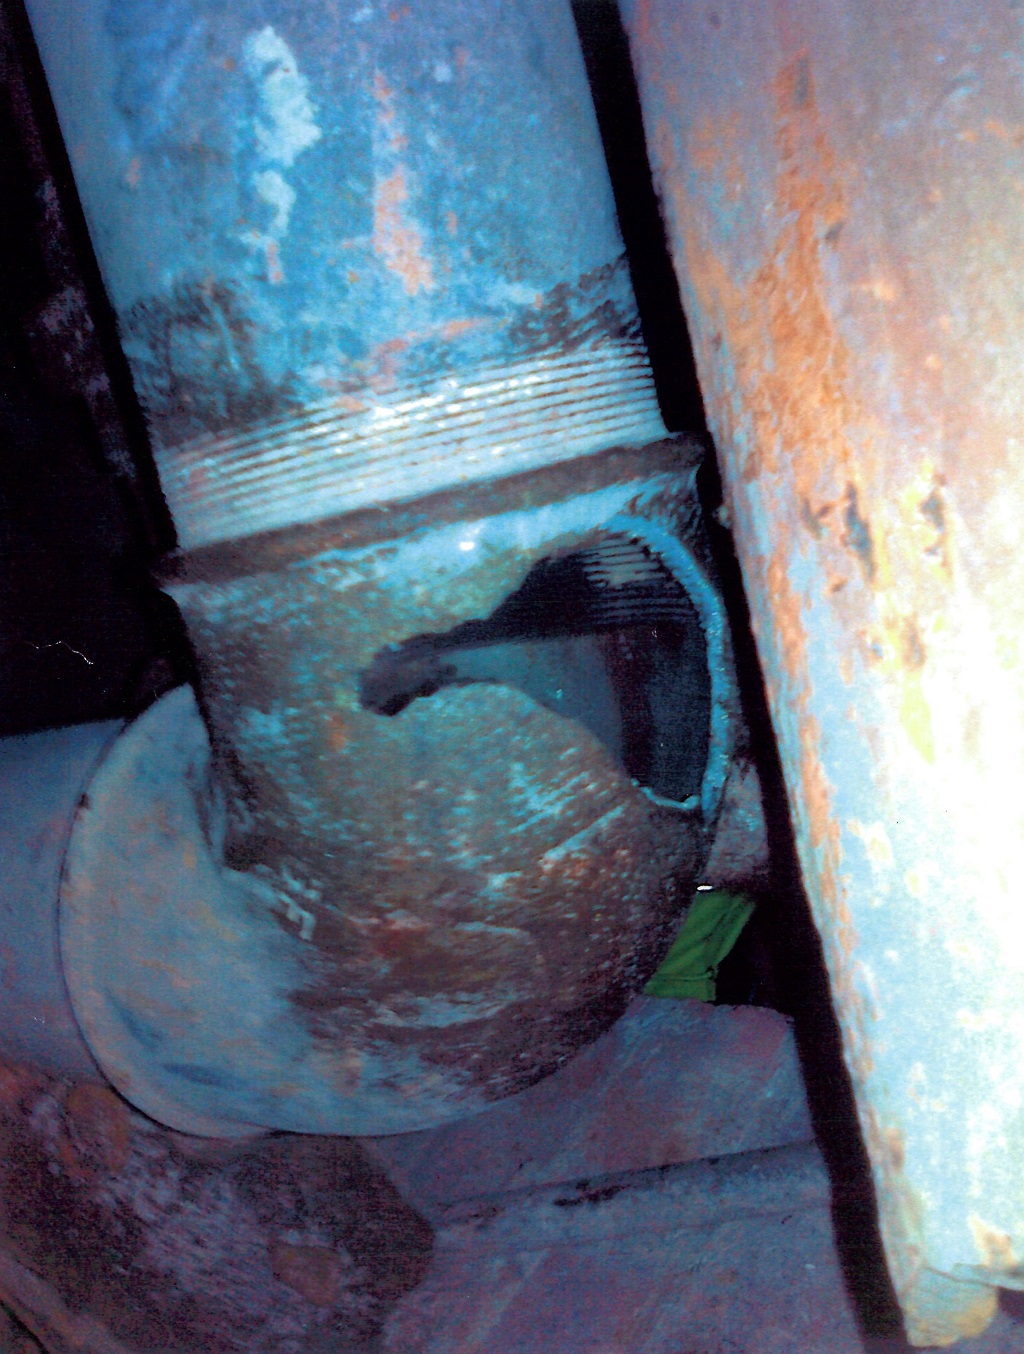  Merepark damaged gas pipe